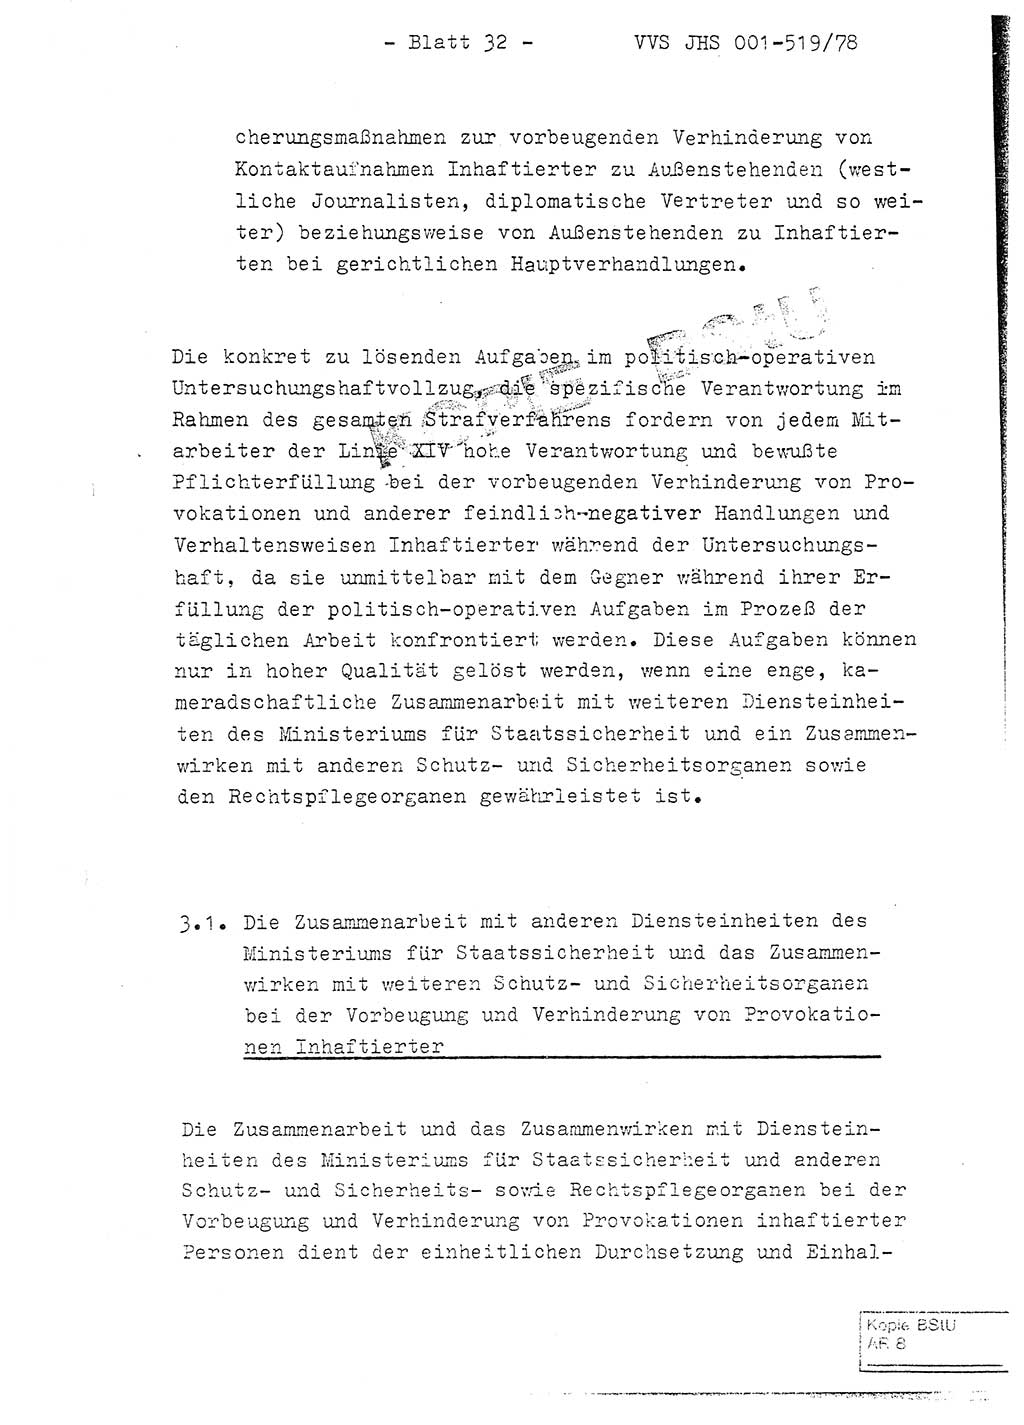 Fachschulabschlußarbeit Hauptmann Alfons Lützelberger (Abt. ⅩⅣ), Ministerium für Staatssicherheit (MfS) [Deutsche Demokratische Republik (DDR)], Juristische Hochschule (JHS), Vertrauliche Verschlußsache (VVS) 001-519/78, Potsdam 1978, Blatt 32 (FS-Abschl.-Arb. MfS DDR JHS VVS 001-519/78 1978, Bl. 32)